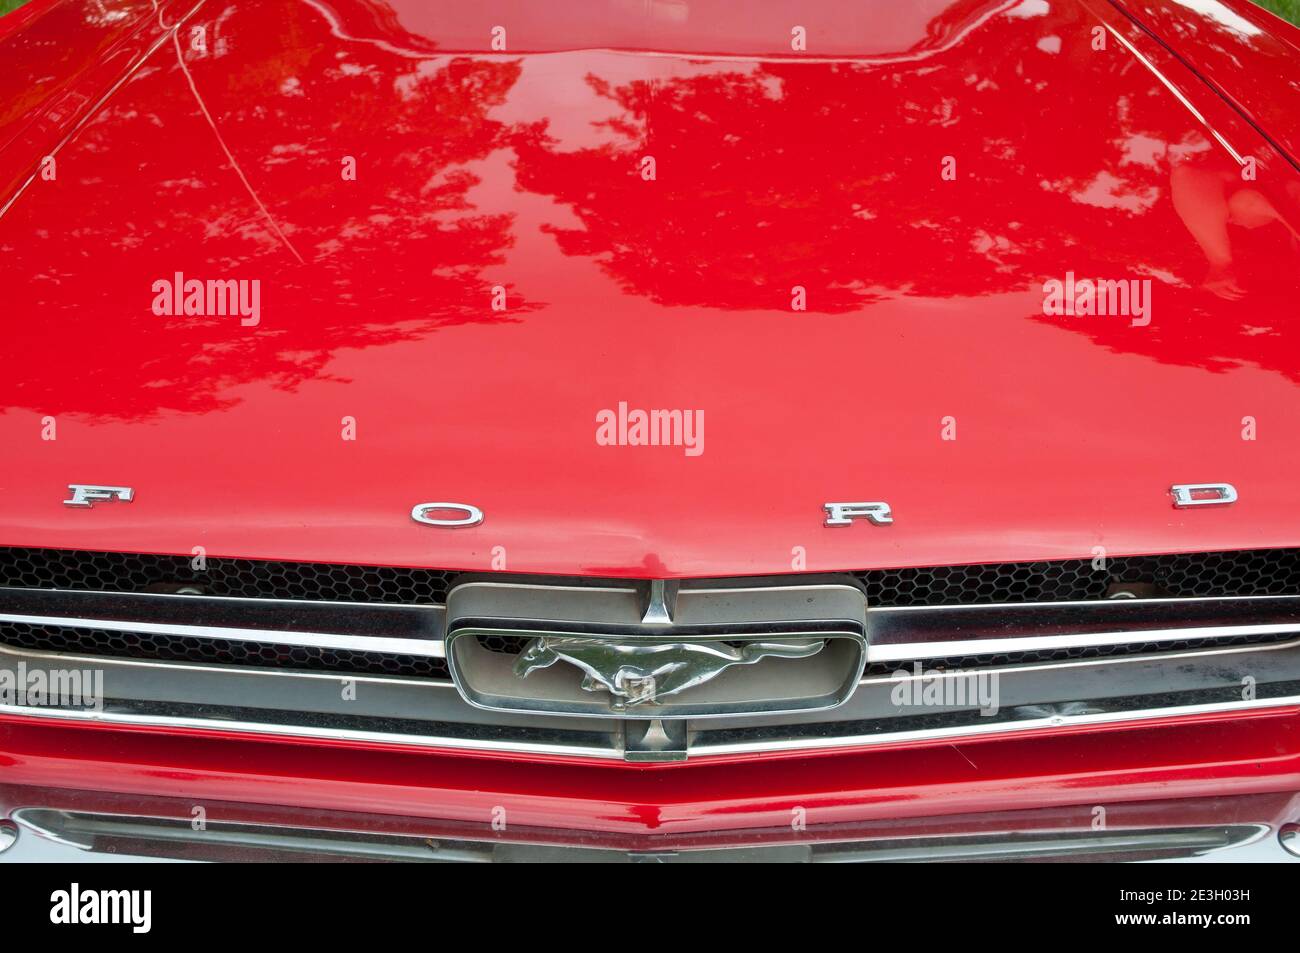 Emblema de ford Mustang Foto de stock